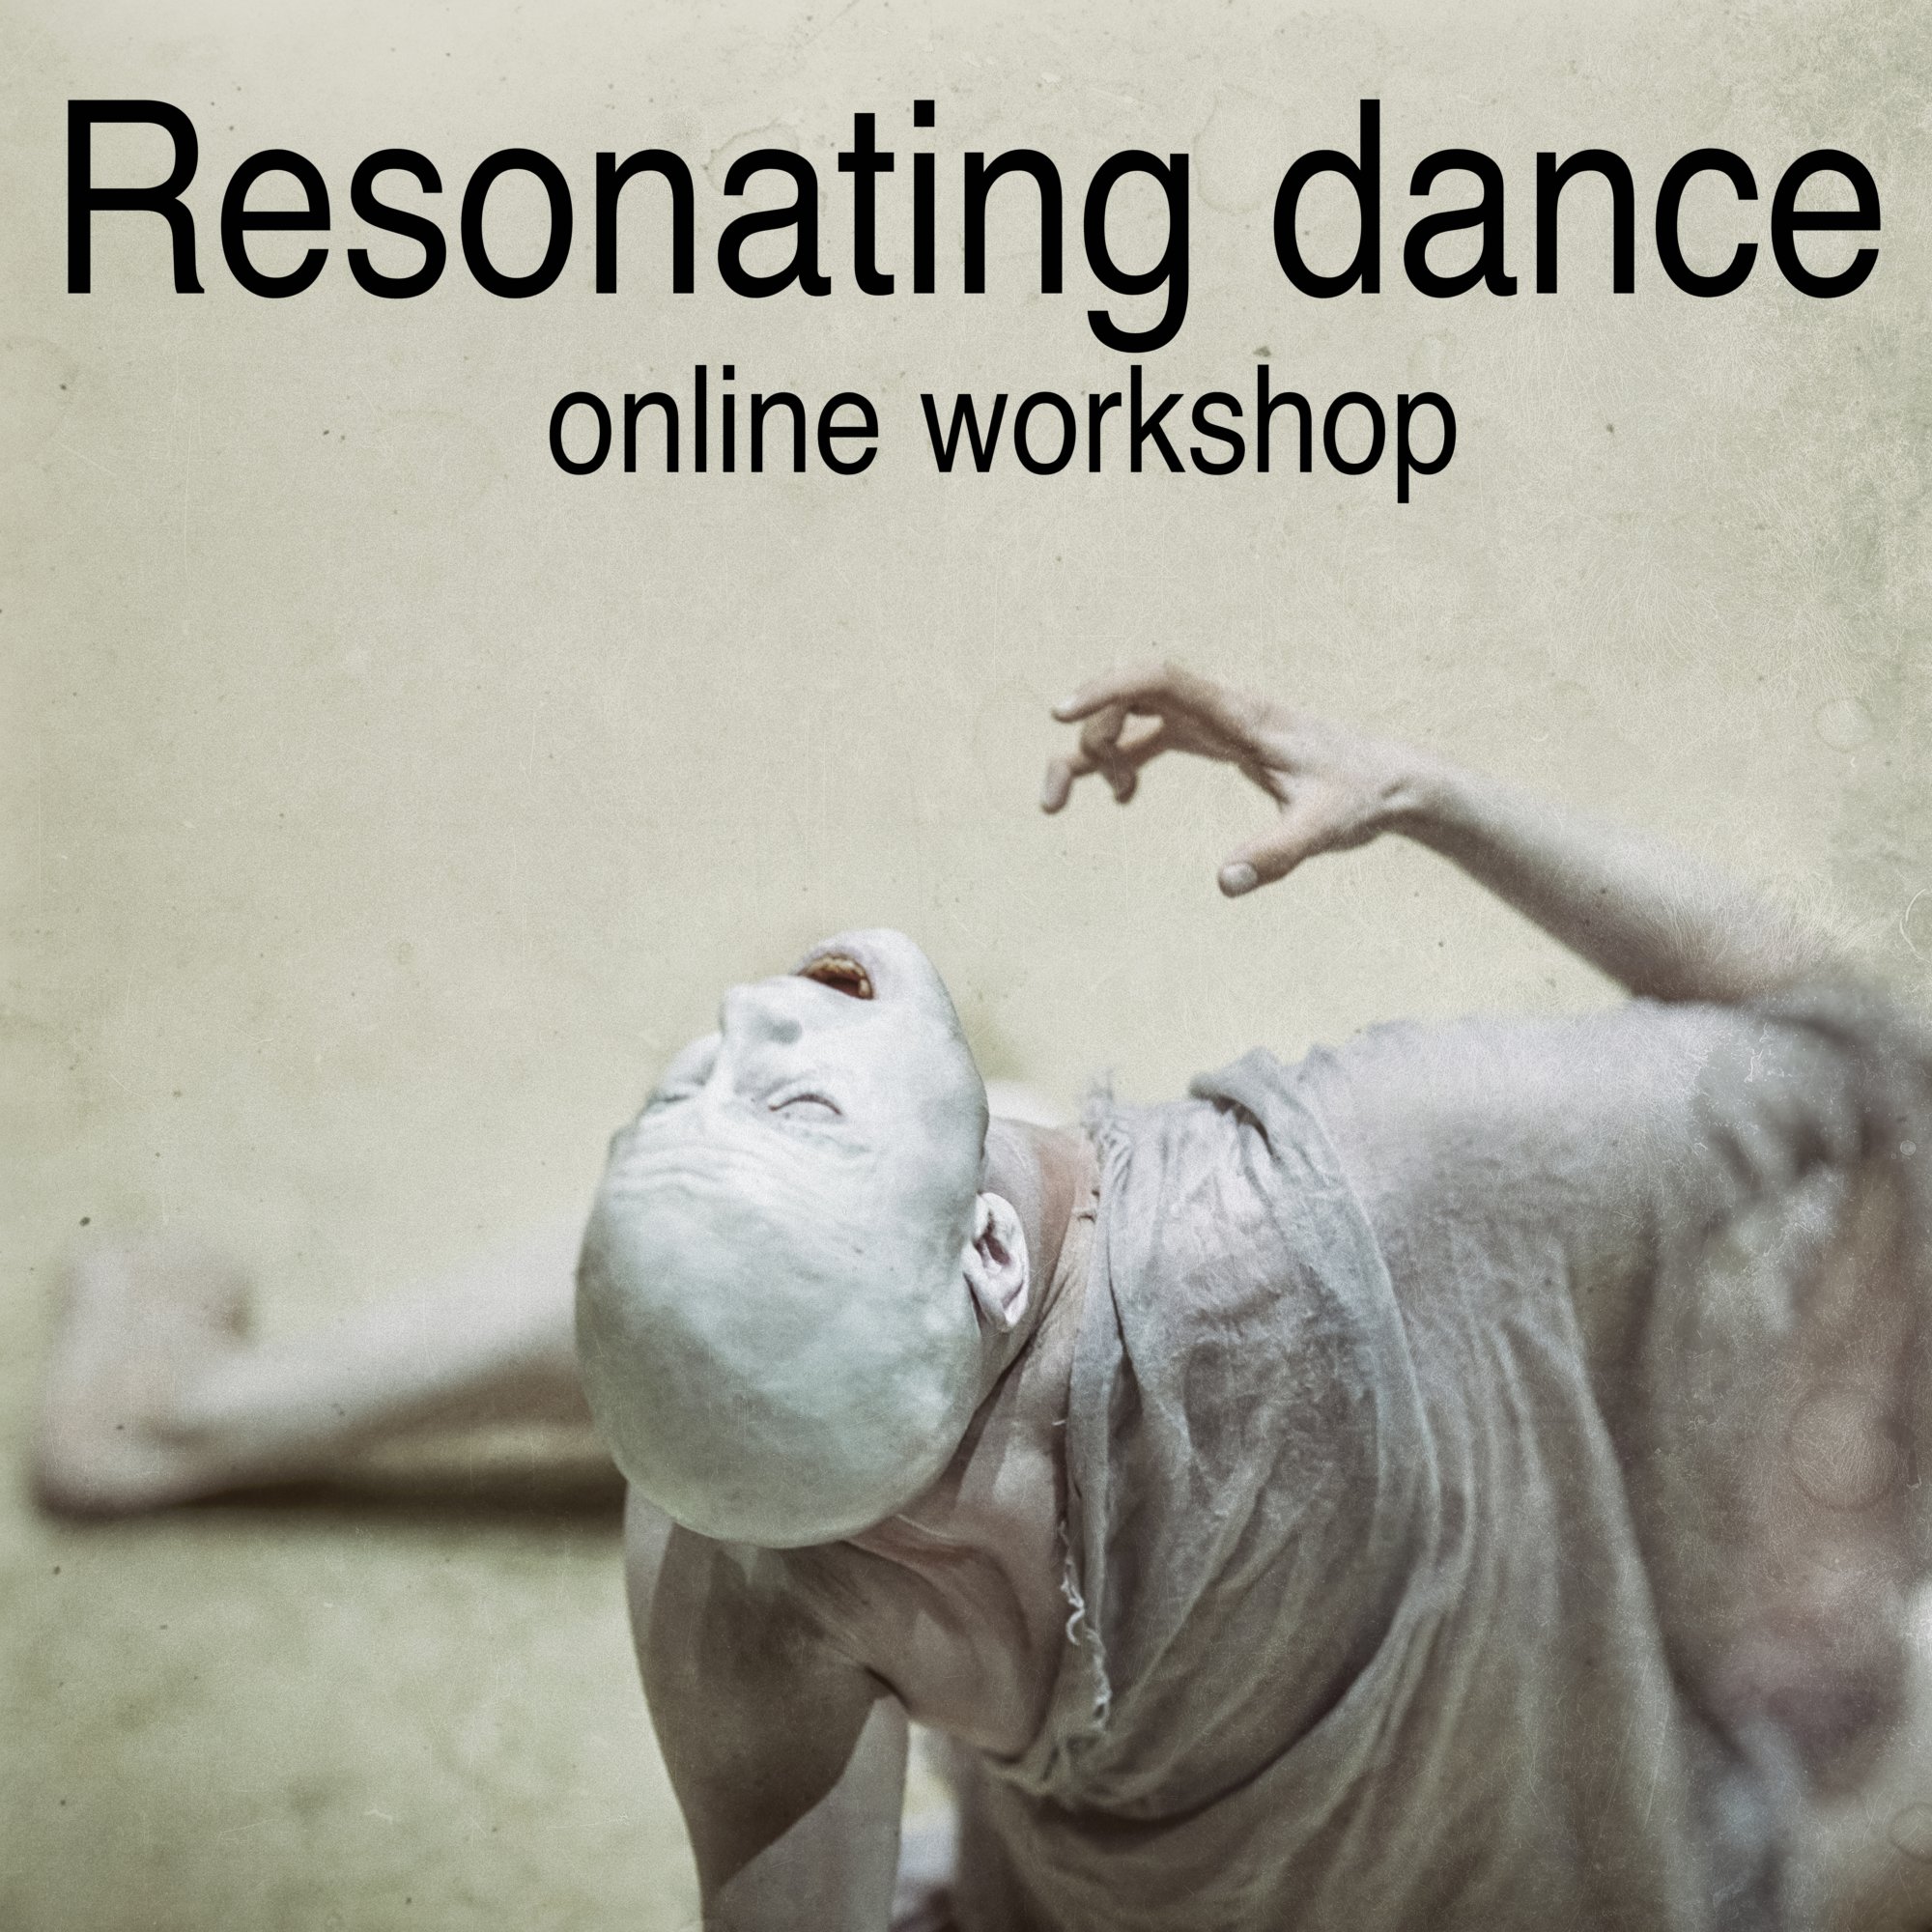 Resonating dance